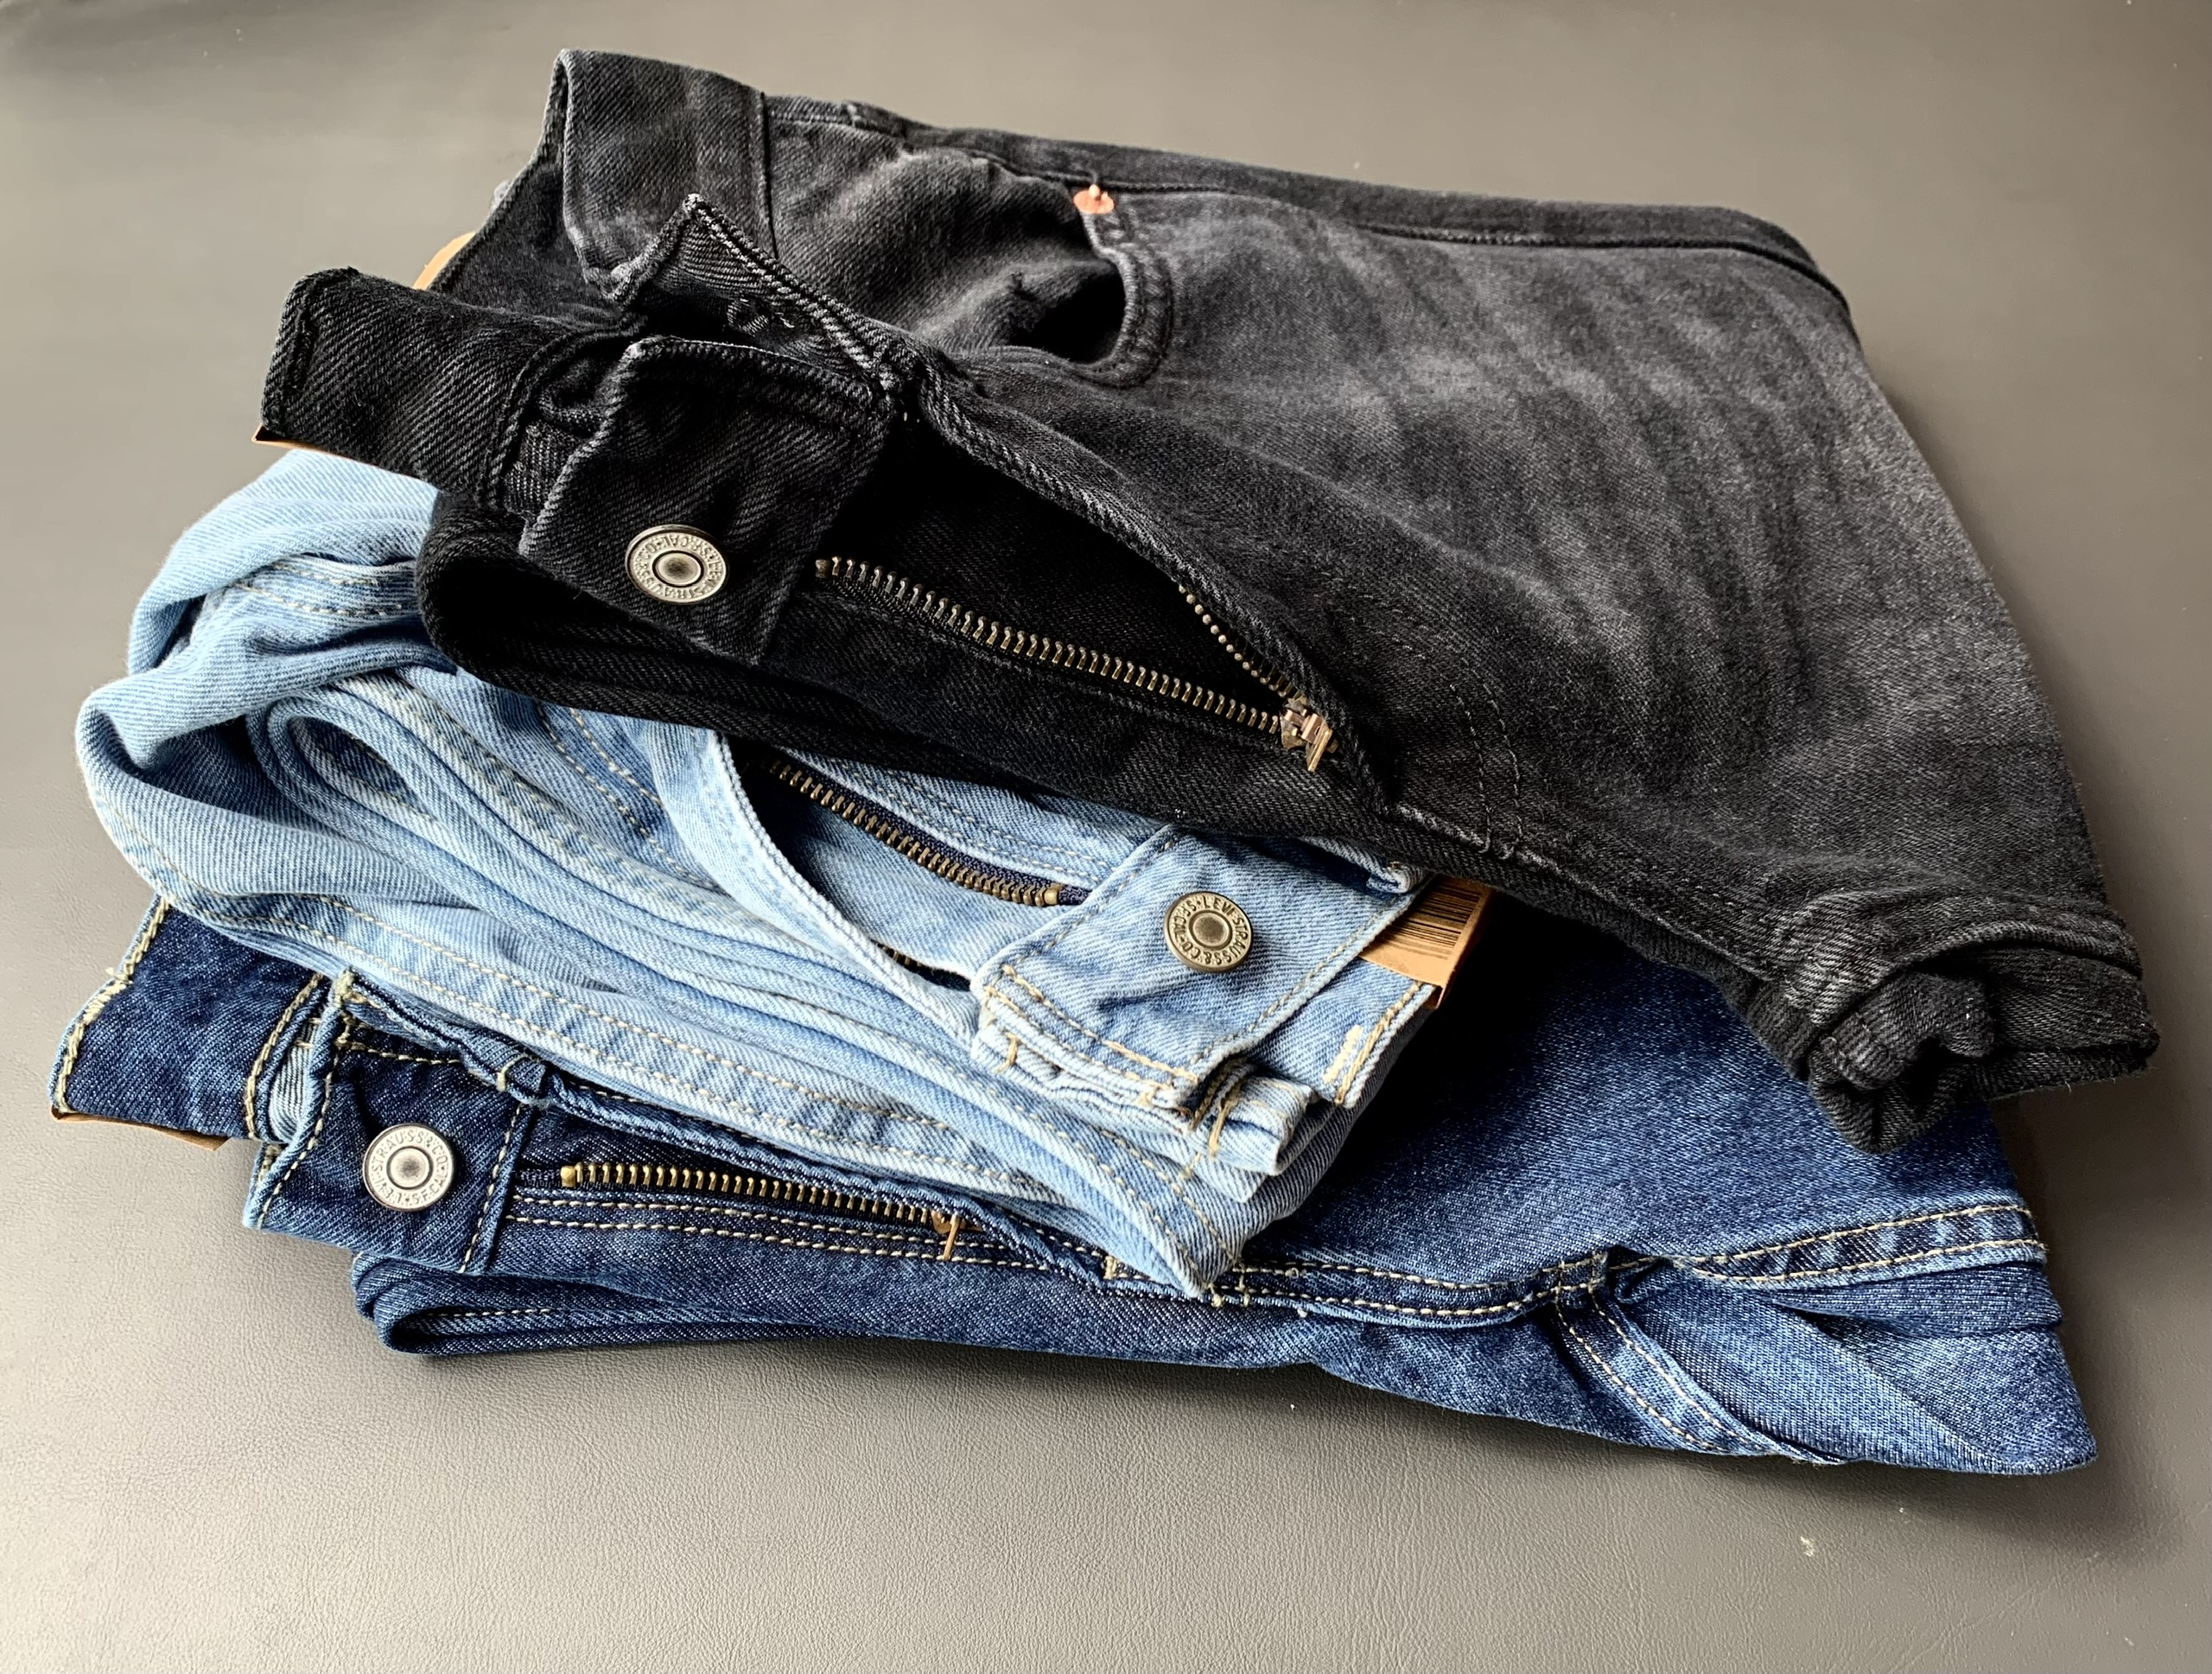 Quần Jeans Nam Chất Vải Cotton 100% Không Xù, Co Giãn Nhẹ, Form Suông Mặc Thoải Mái - JL-02